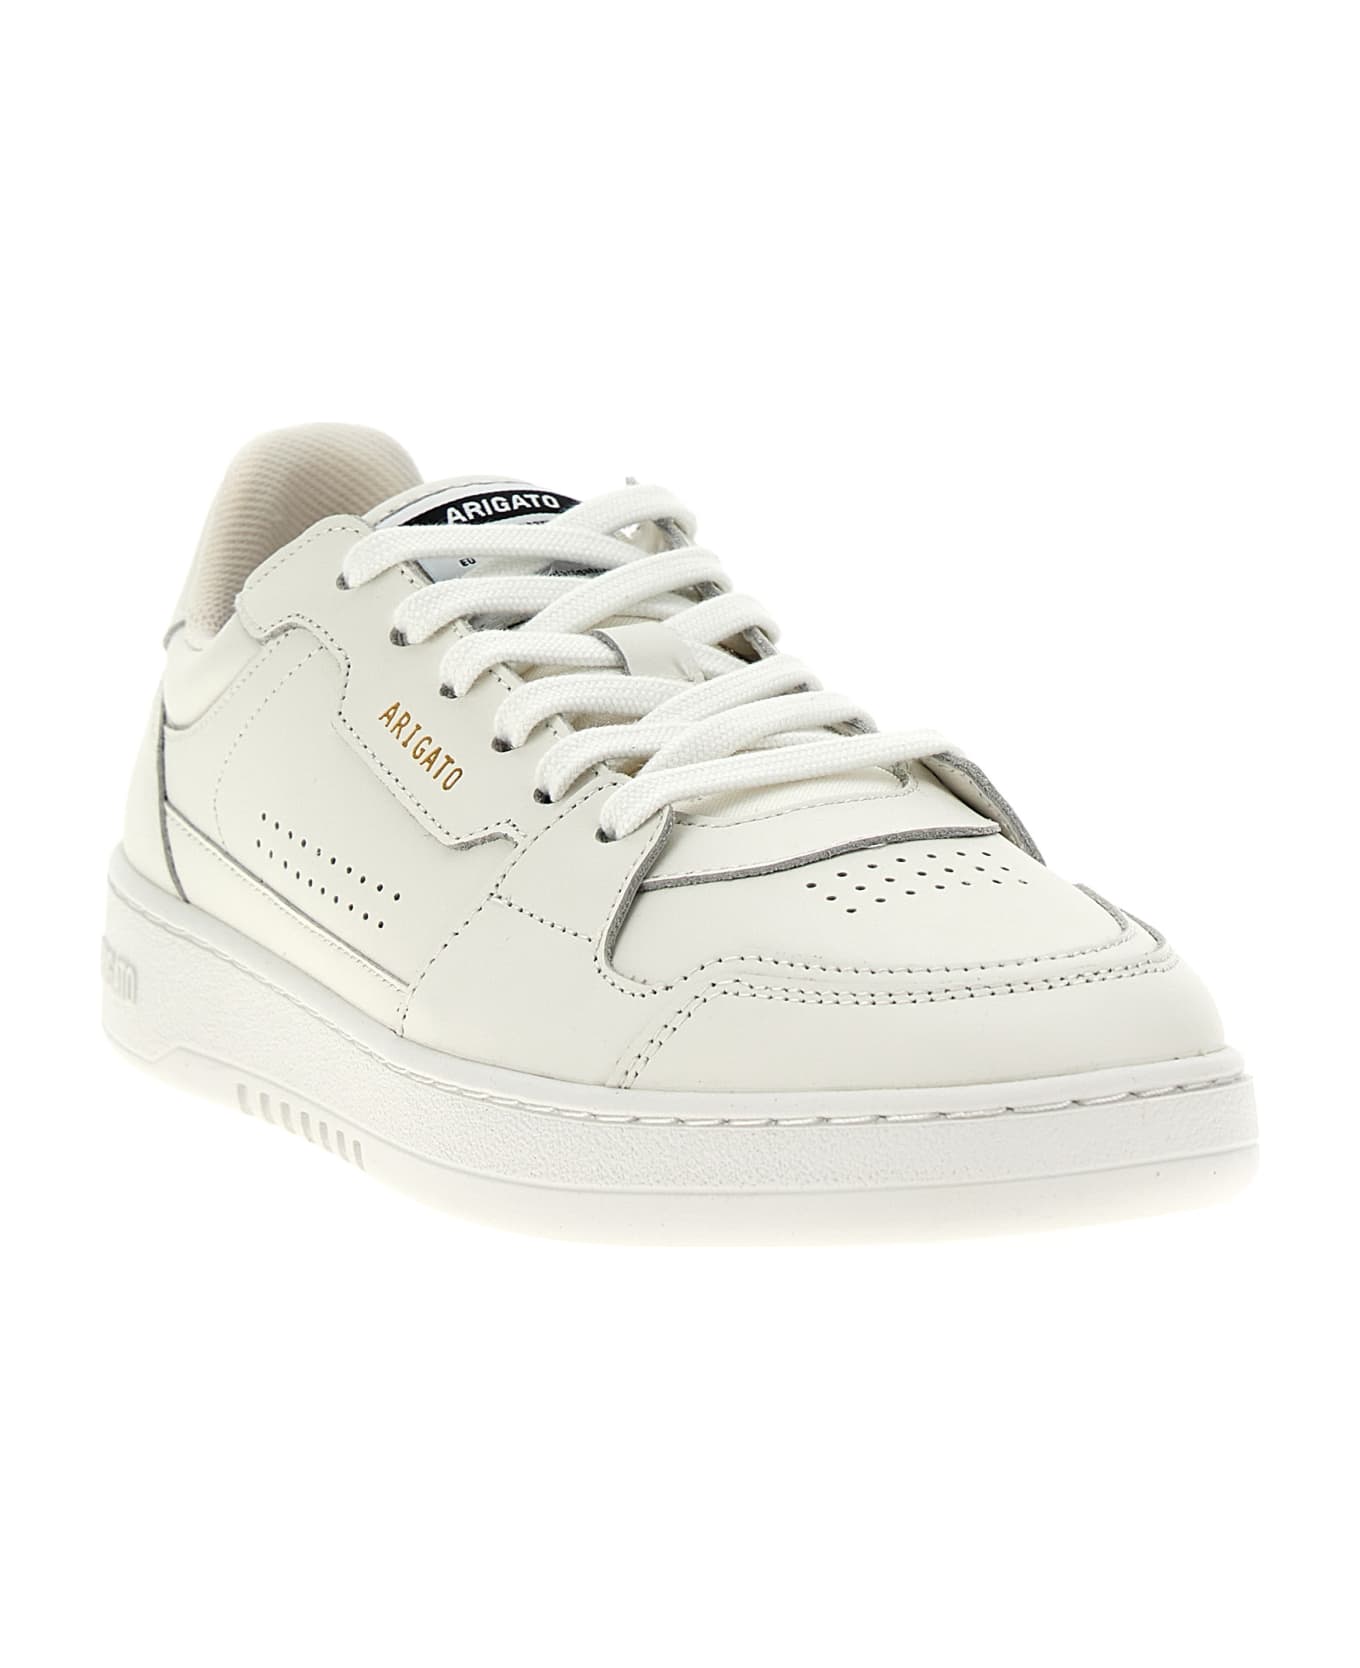 Axel Arigato 'dice Lo' Sneakers - White